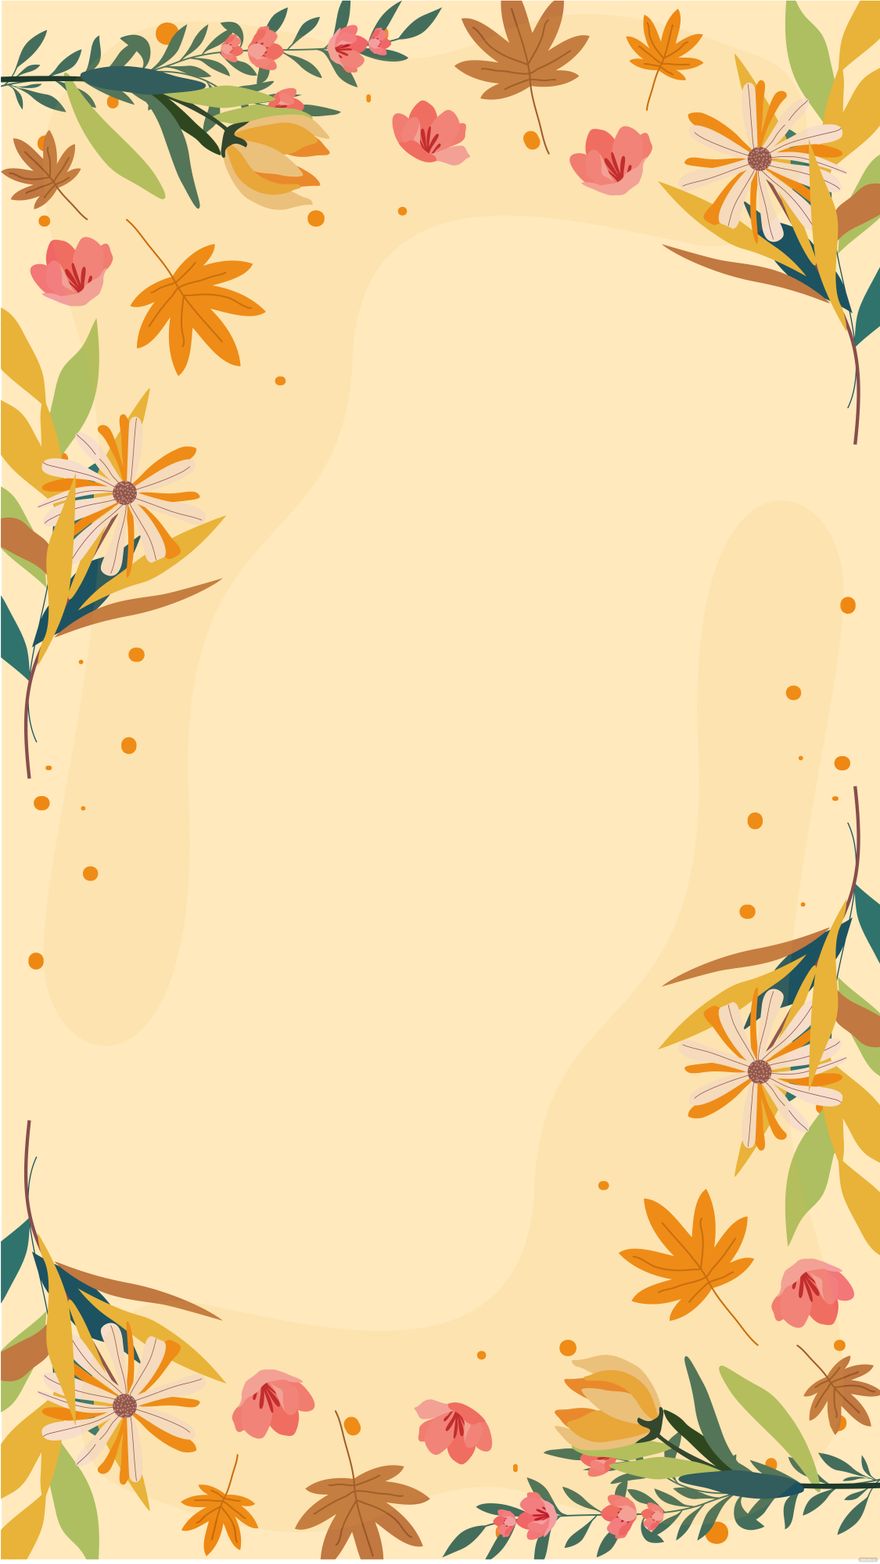 Free Fall Floral Arrangements Background in Illustrator, EPS, SVG, JPG